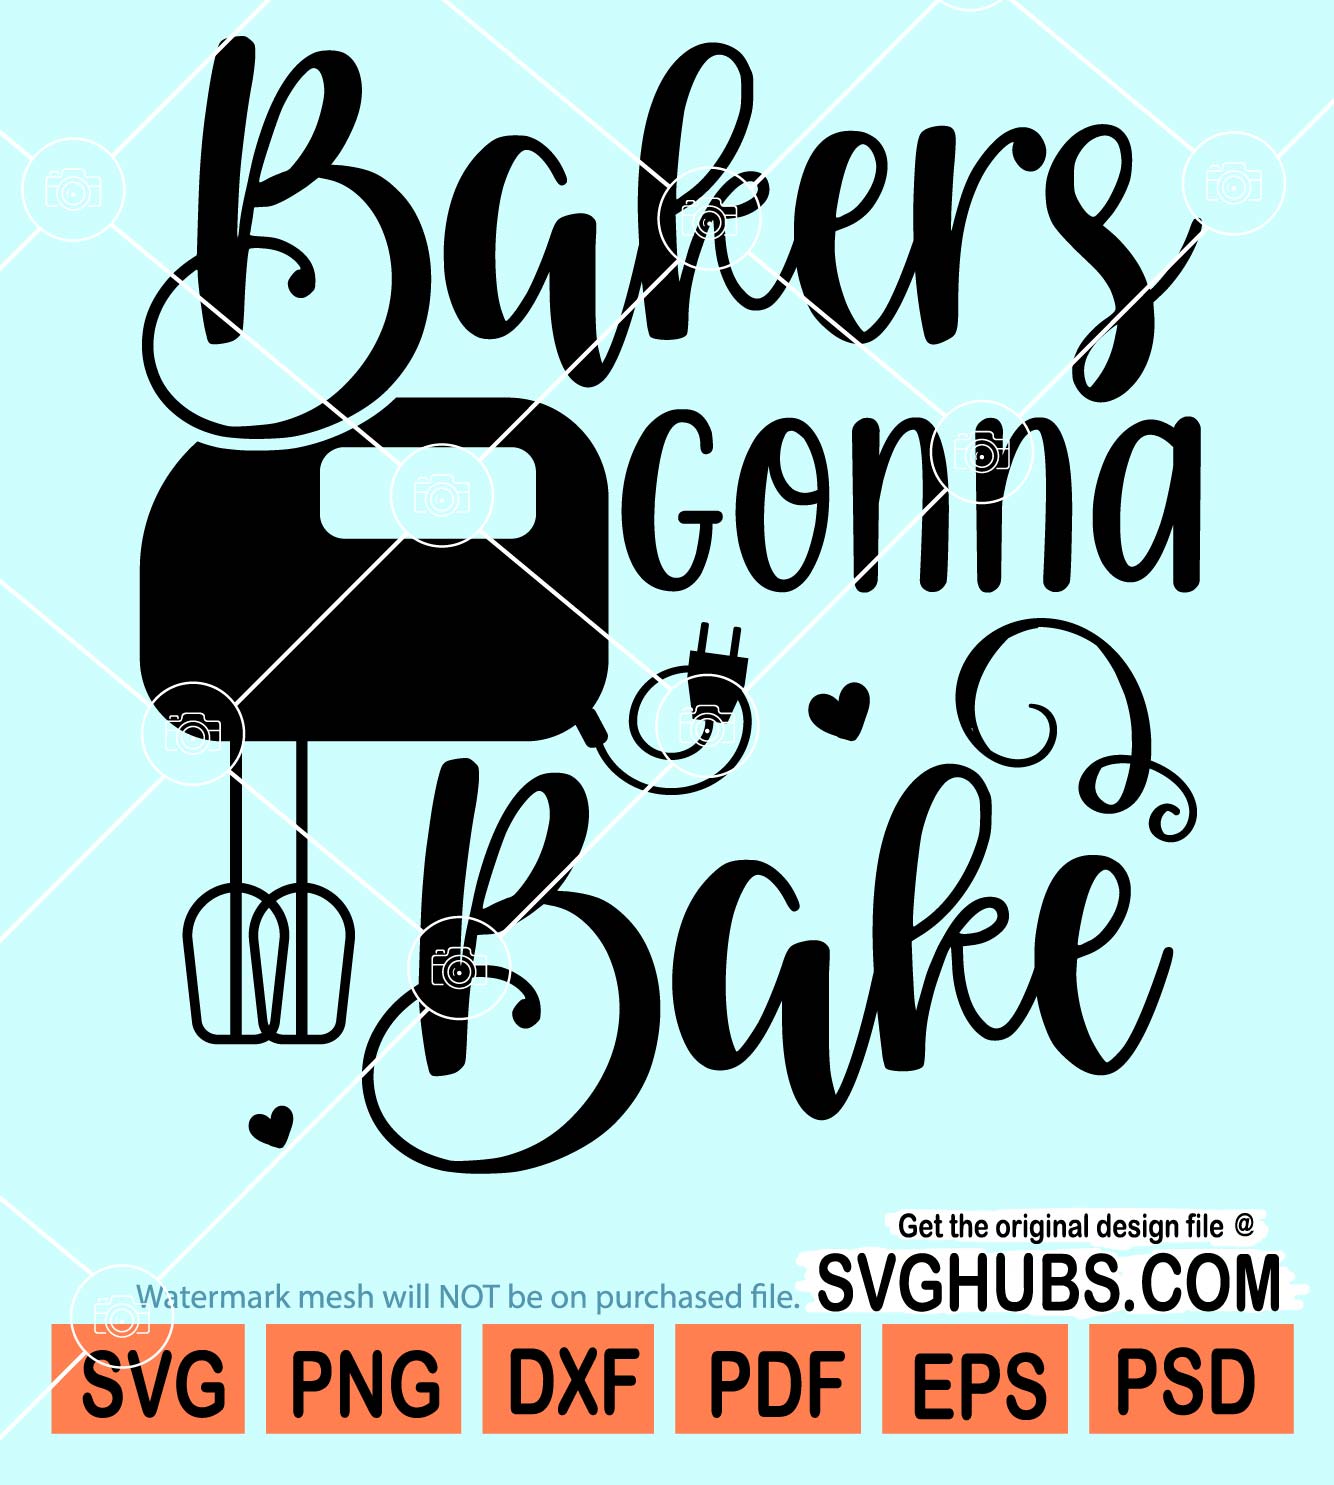 Bakers gonna bake svg, Baking Svg, Baker Svg, funny kitchen quotes svg,  kitchen svg